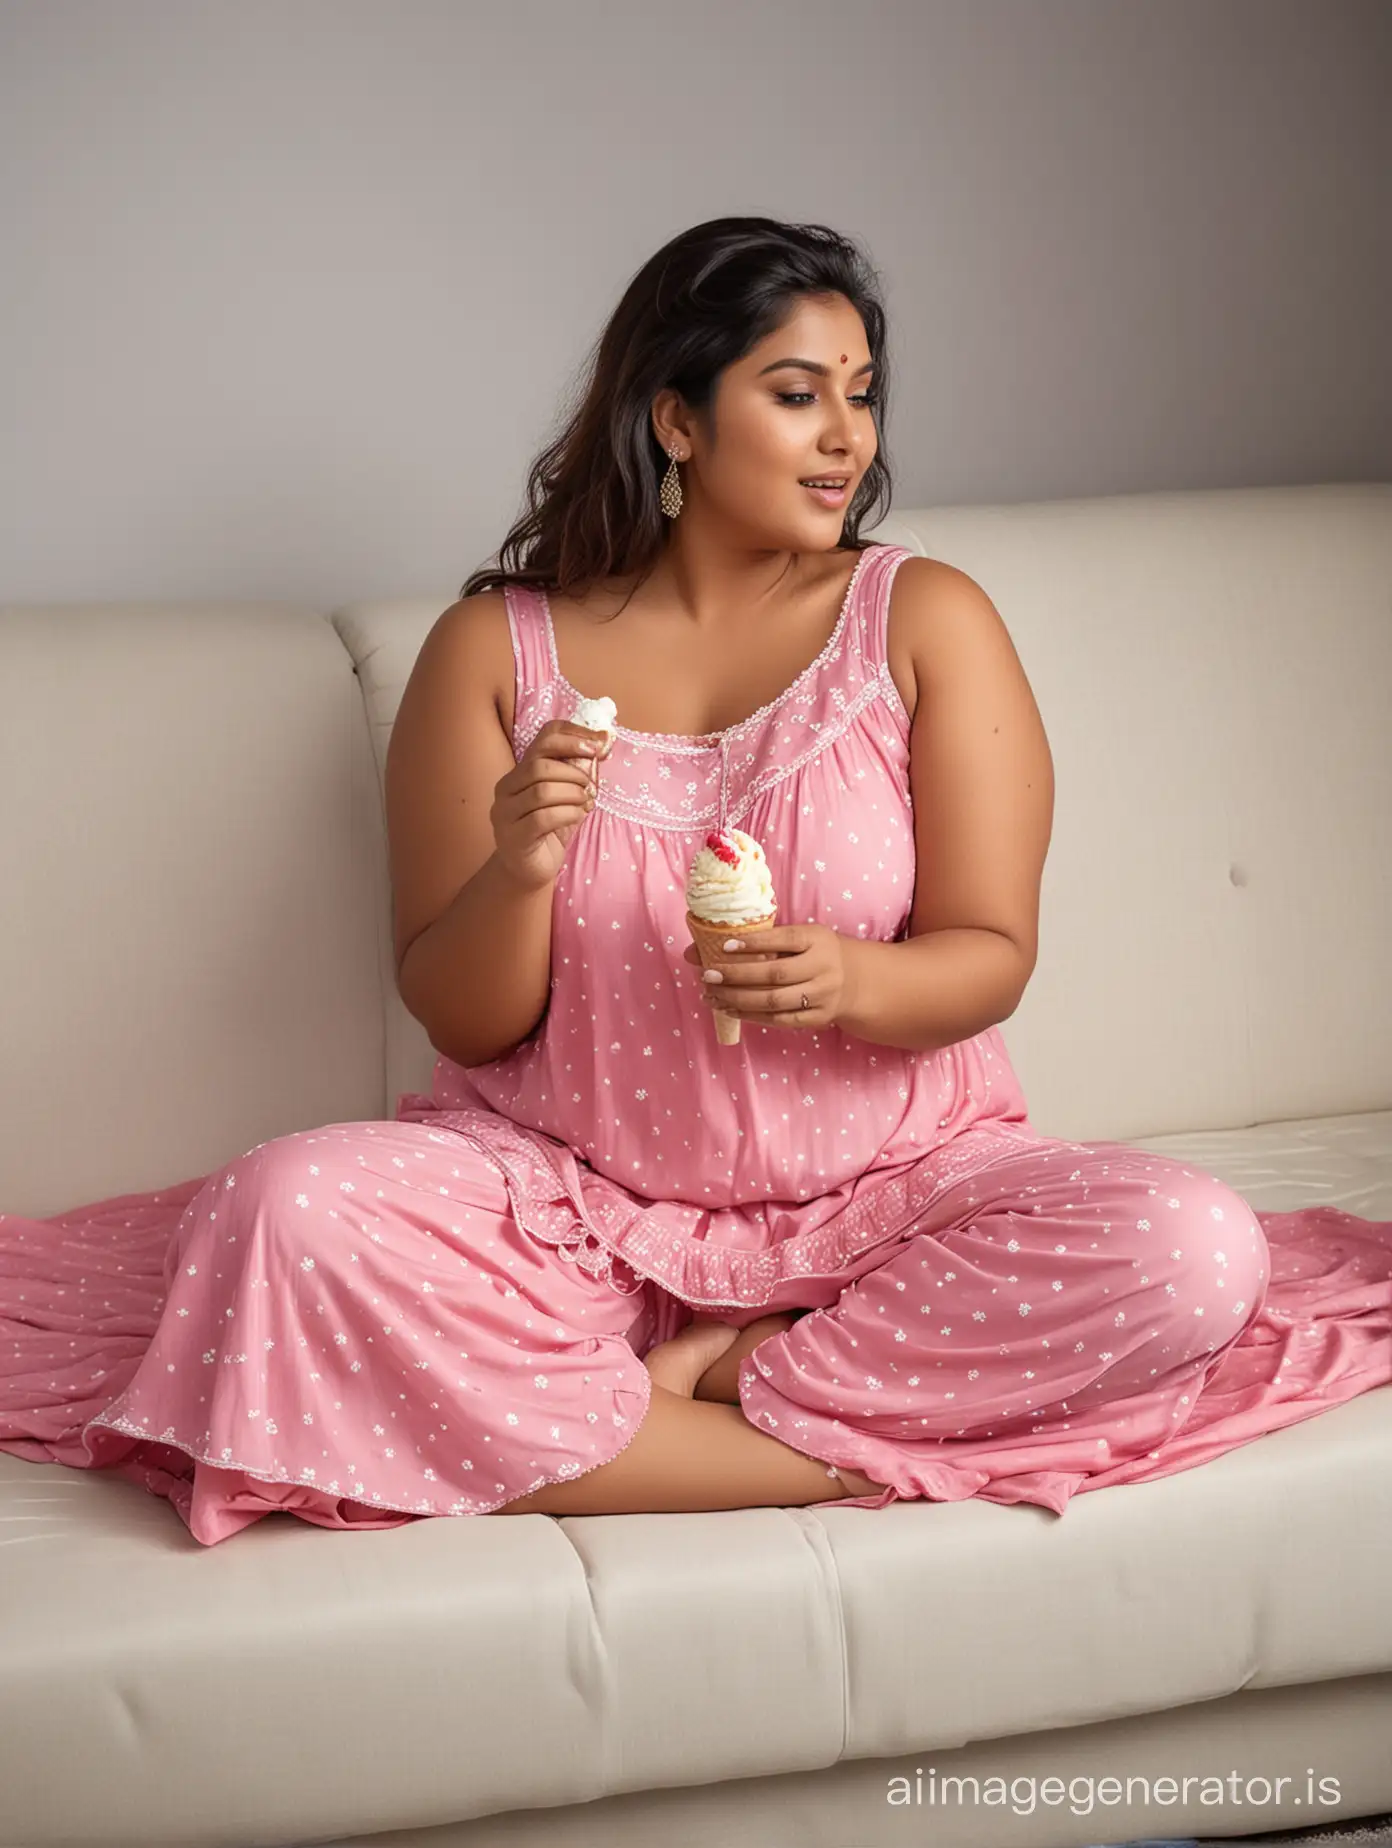 Indian-Plus-Size-Woman-Enjoying-Ice-Cream-in-Sleeveless-Nightwear